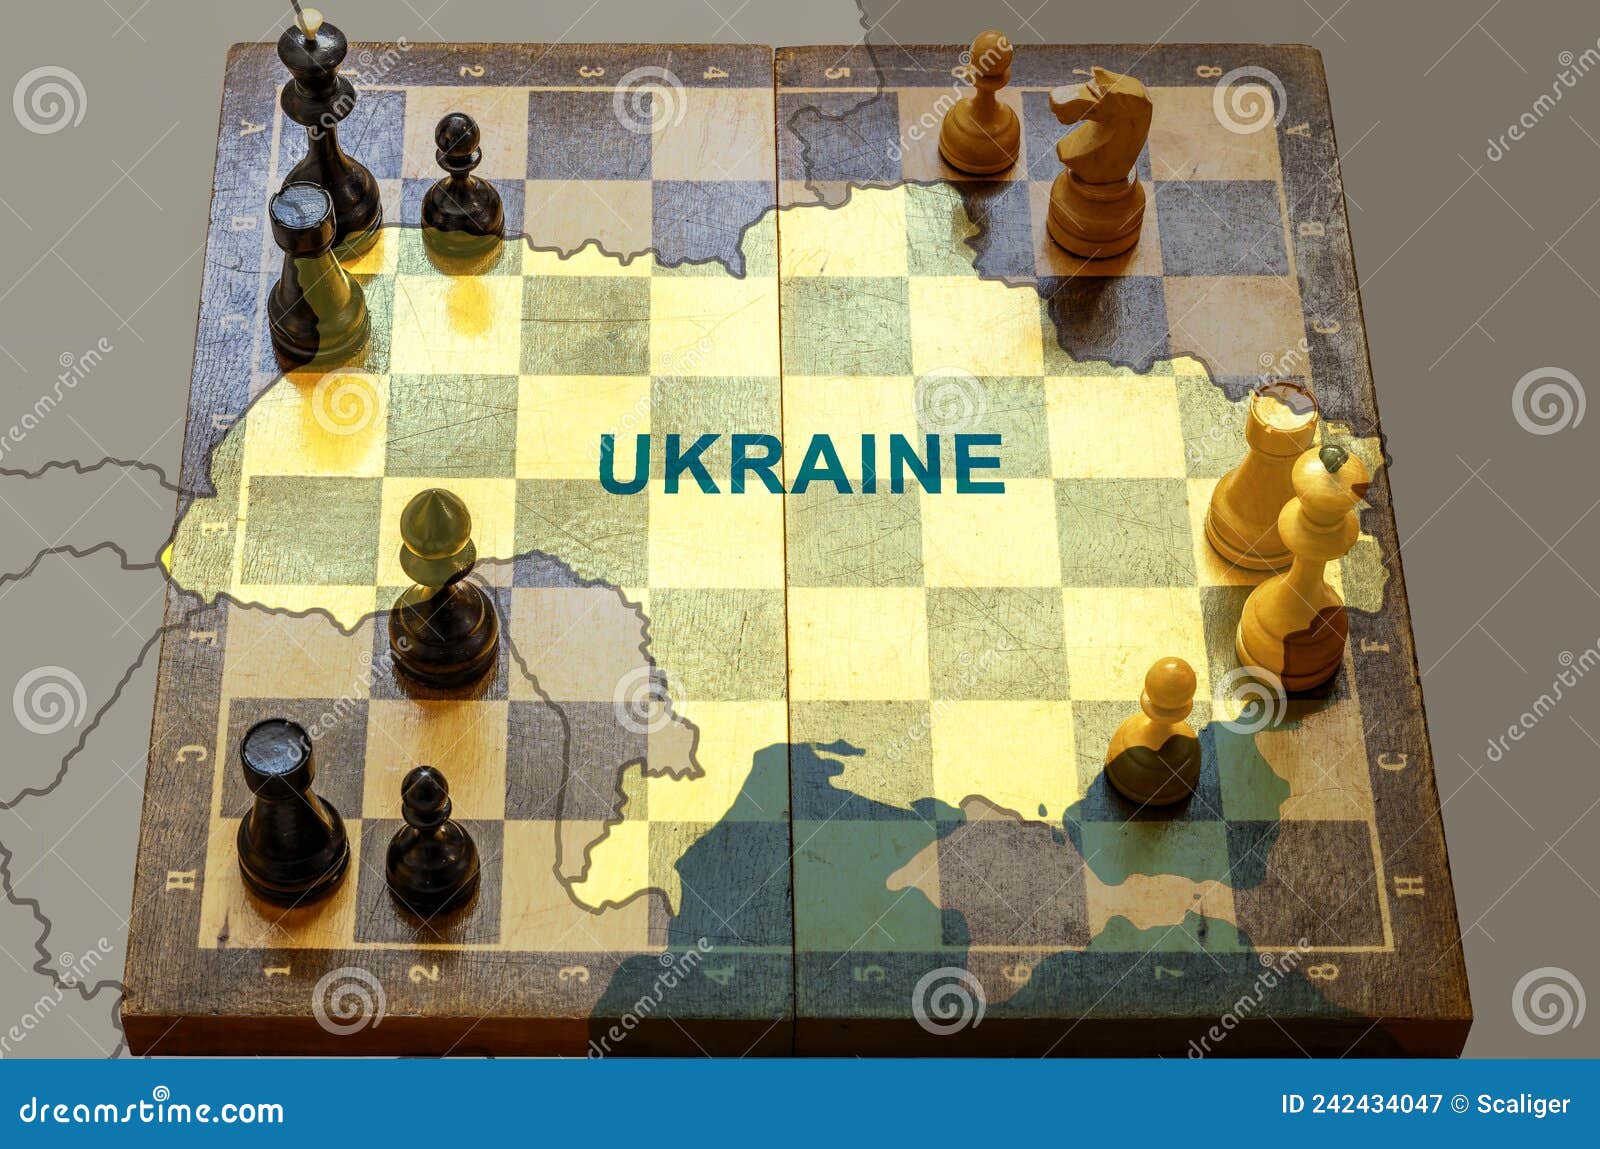 Simule a guerra Rússia x Ucrânia com este jogo de tabuleiro grátis